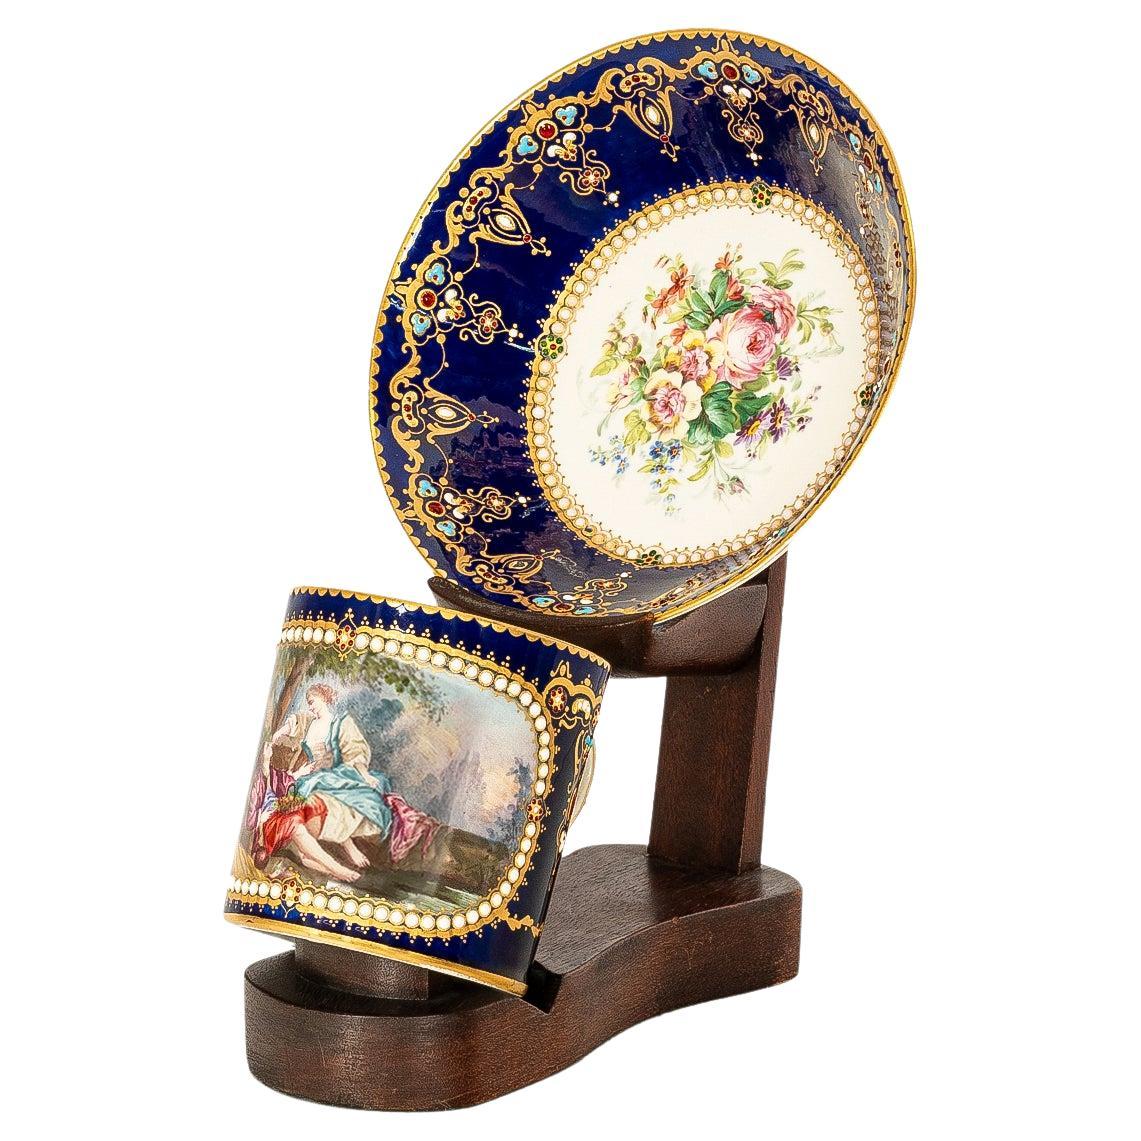 Antike französische Sevres-Porzellan-Tasse/ Untertasse aus dem 18. Jahrhundert von Bardet 1758, Louis XV.-Stil